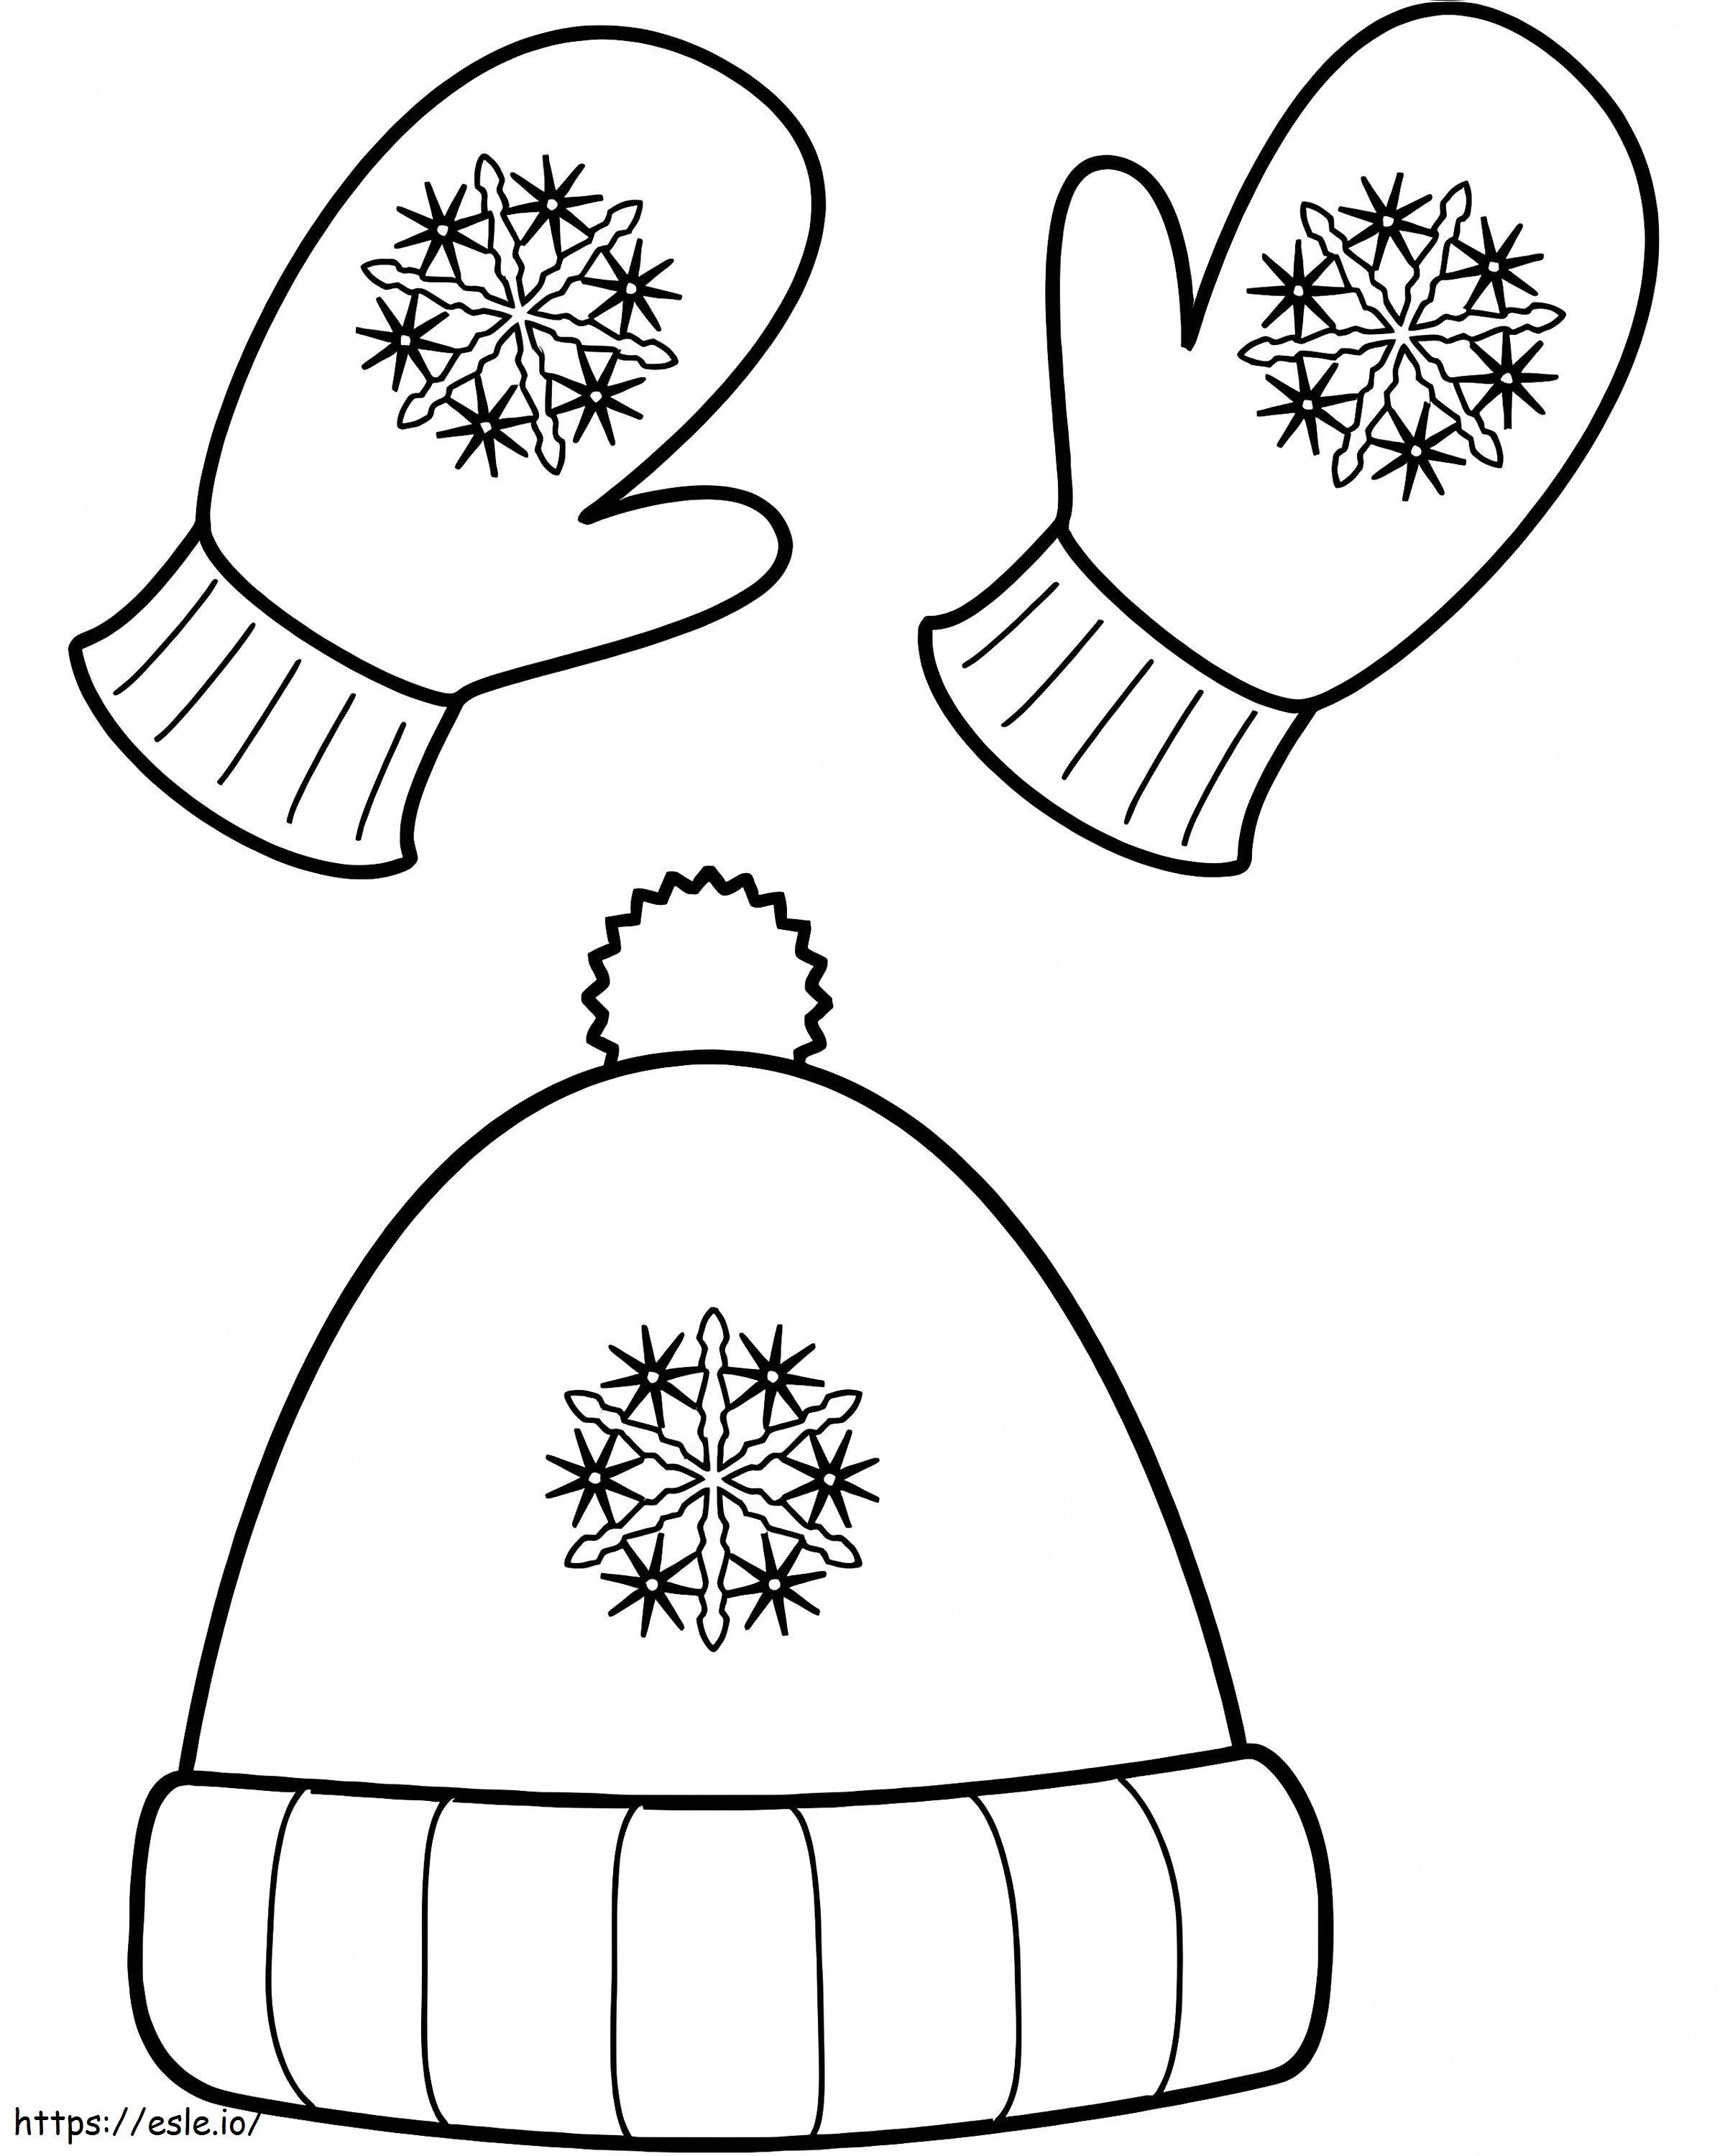 Kışlık Şapka ve Eldivenler boyama